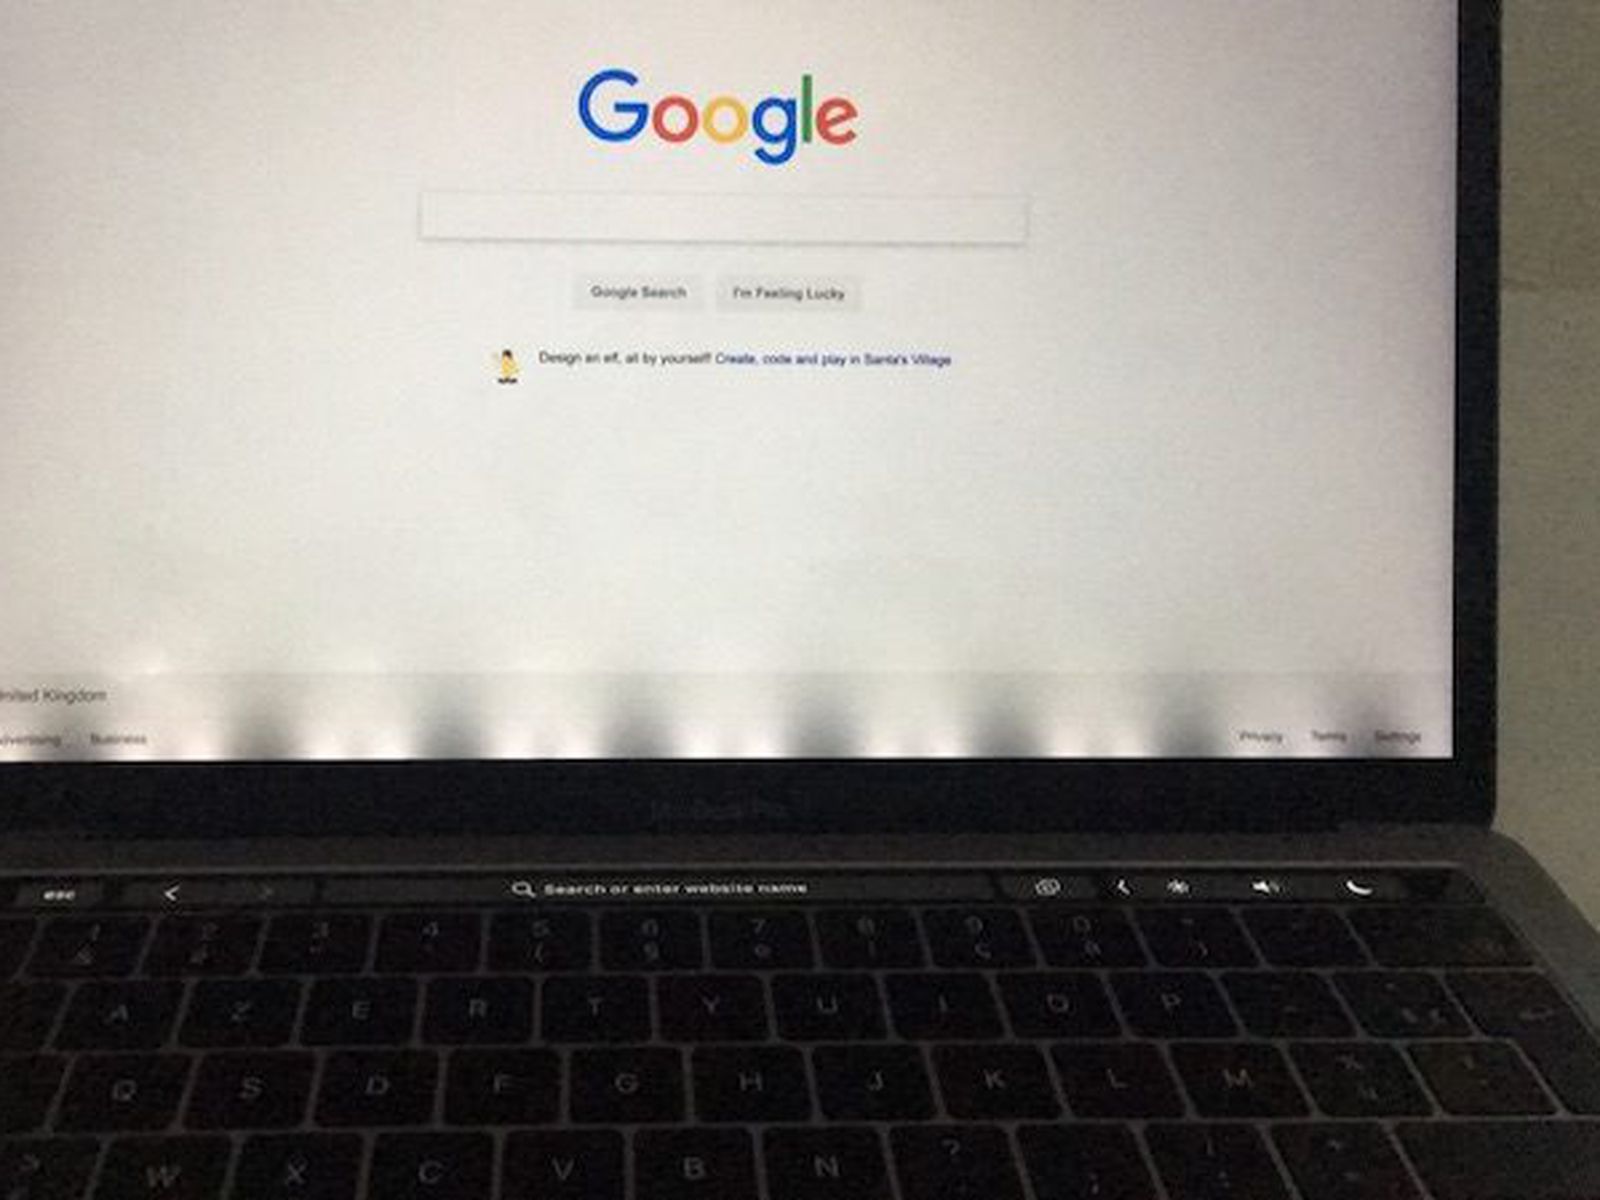 Flexgate MacBook Pro Error